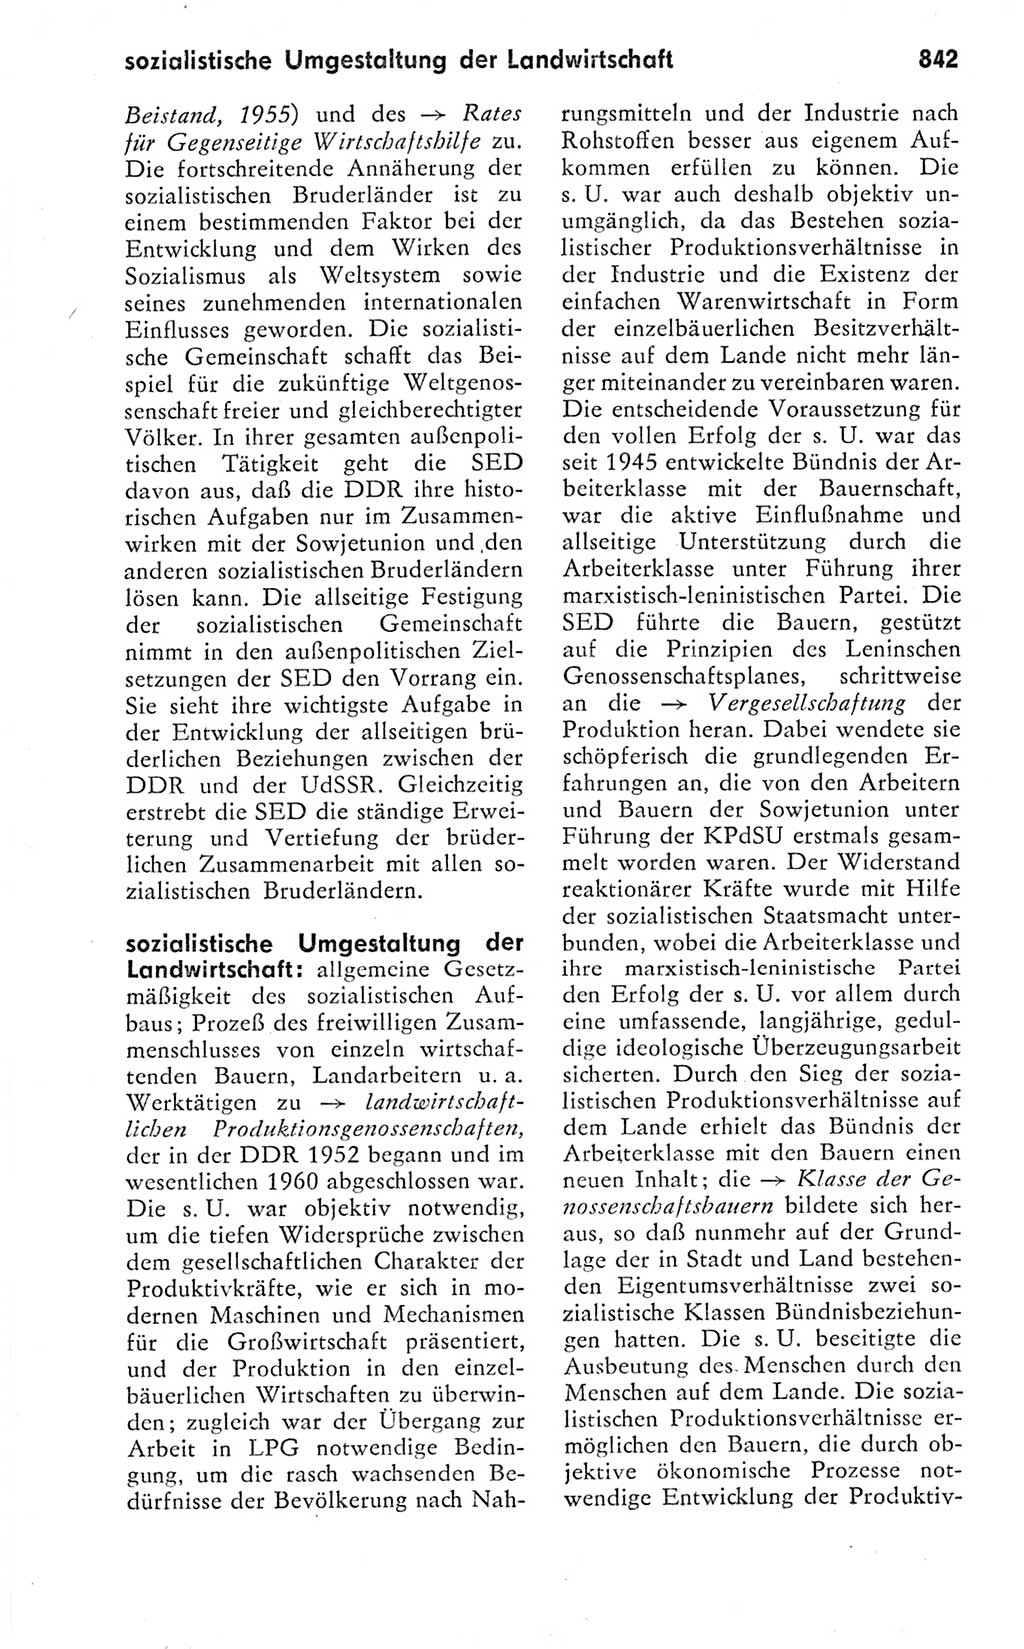 Kleines politisches Wörterbuch [Deutsche Demokratische Republik (DDR)] 1978, Seite 842 (Kl. pol. Wb. DDR 1978, S. 842)